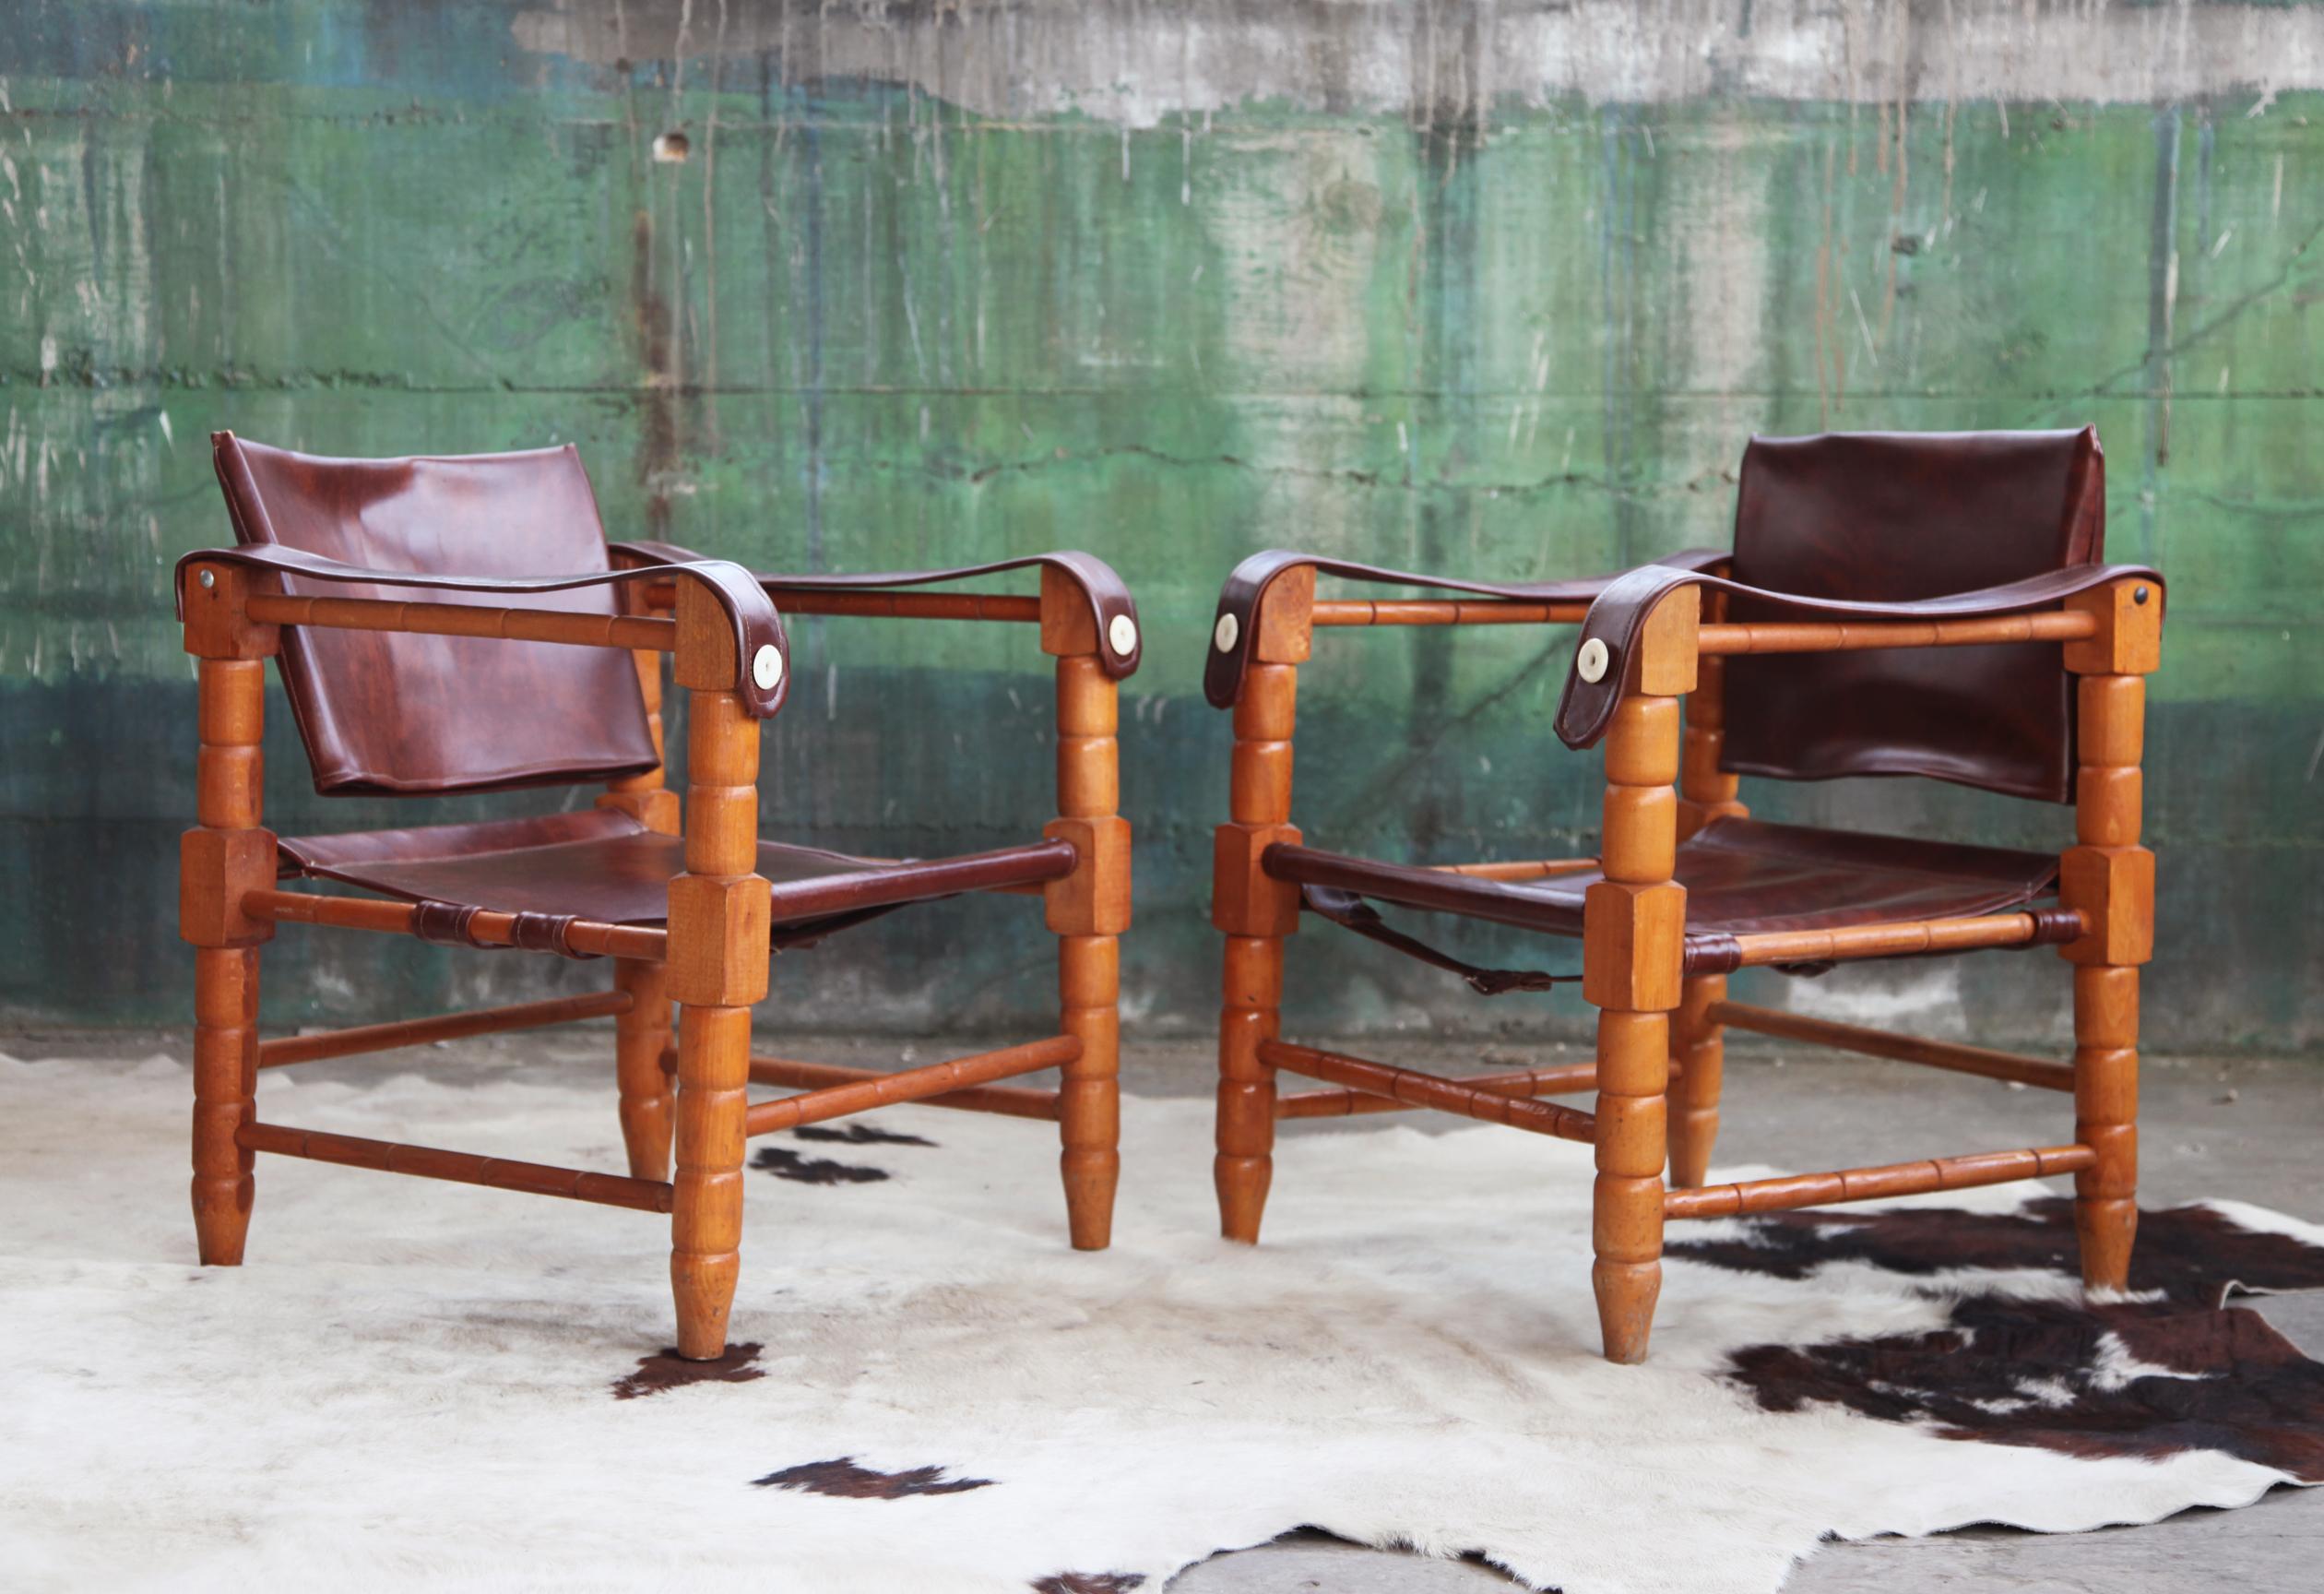 Vendu ici comme une paire.

Nous mettons en vente ici une magnifique paire de chaises safari sculpturales importées d'Afrique dans les années 60 par notre client, qui était un collectionneur passionné. Ces versions sculptées à la main de la chaise